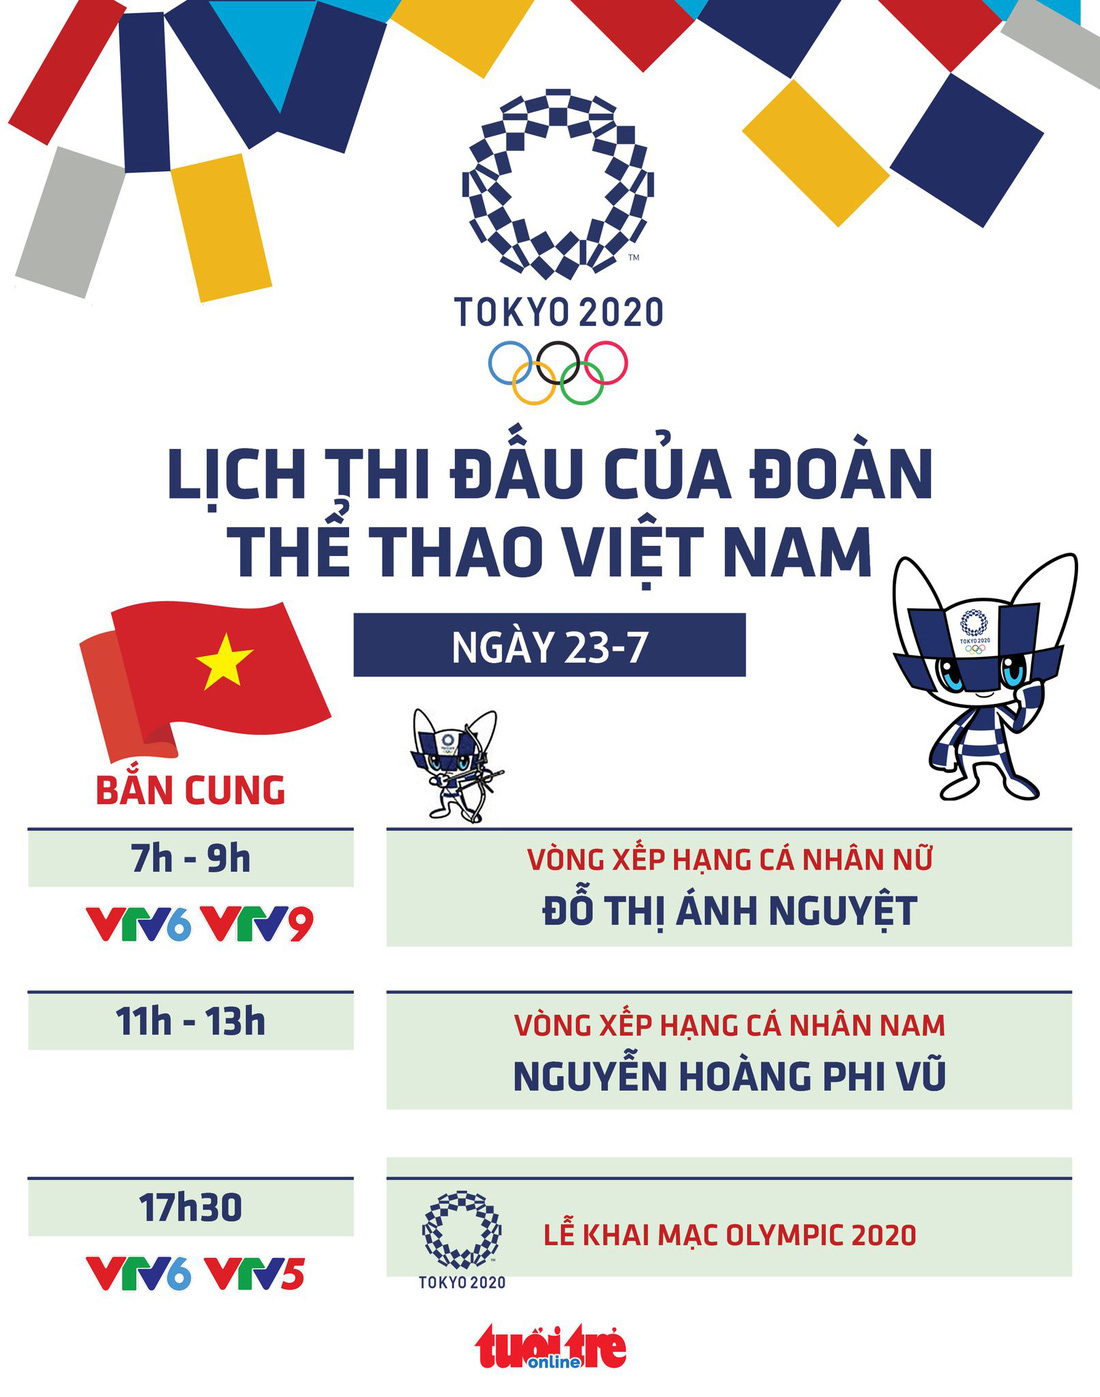 Lịch thi đấu ngày 23-7 của đoàn thể thao Việt Nam tại Olympic 2020 - Ảnh 1.